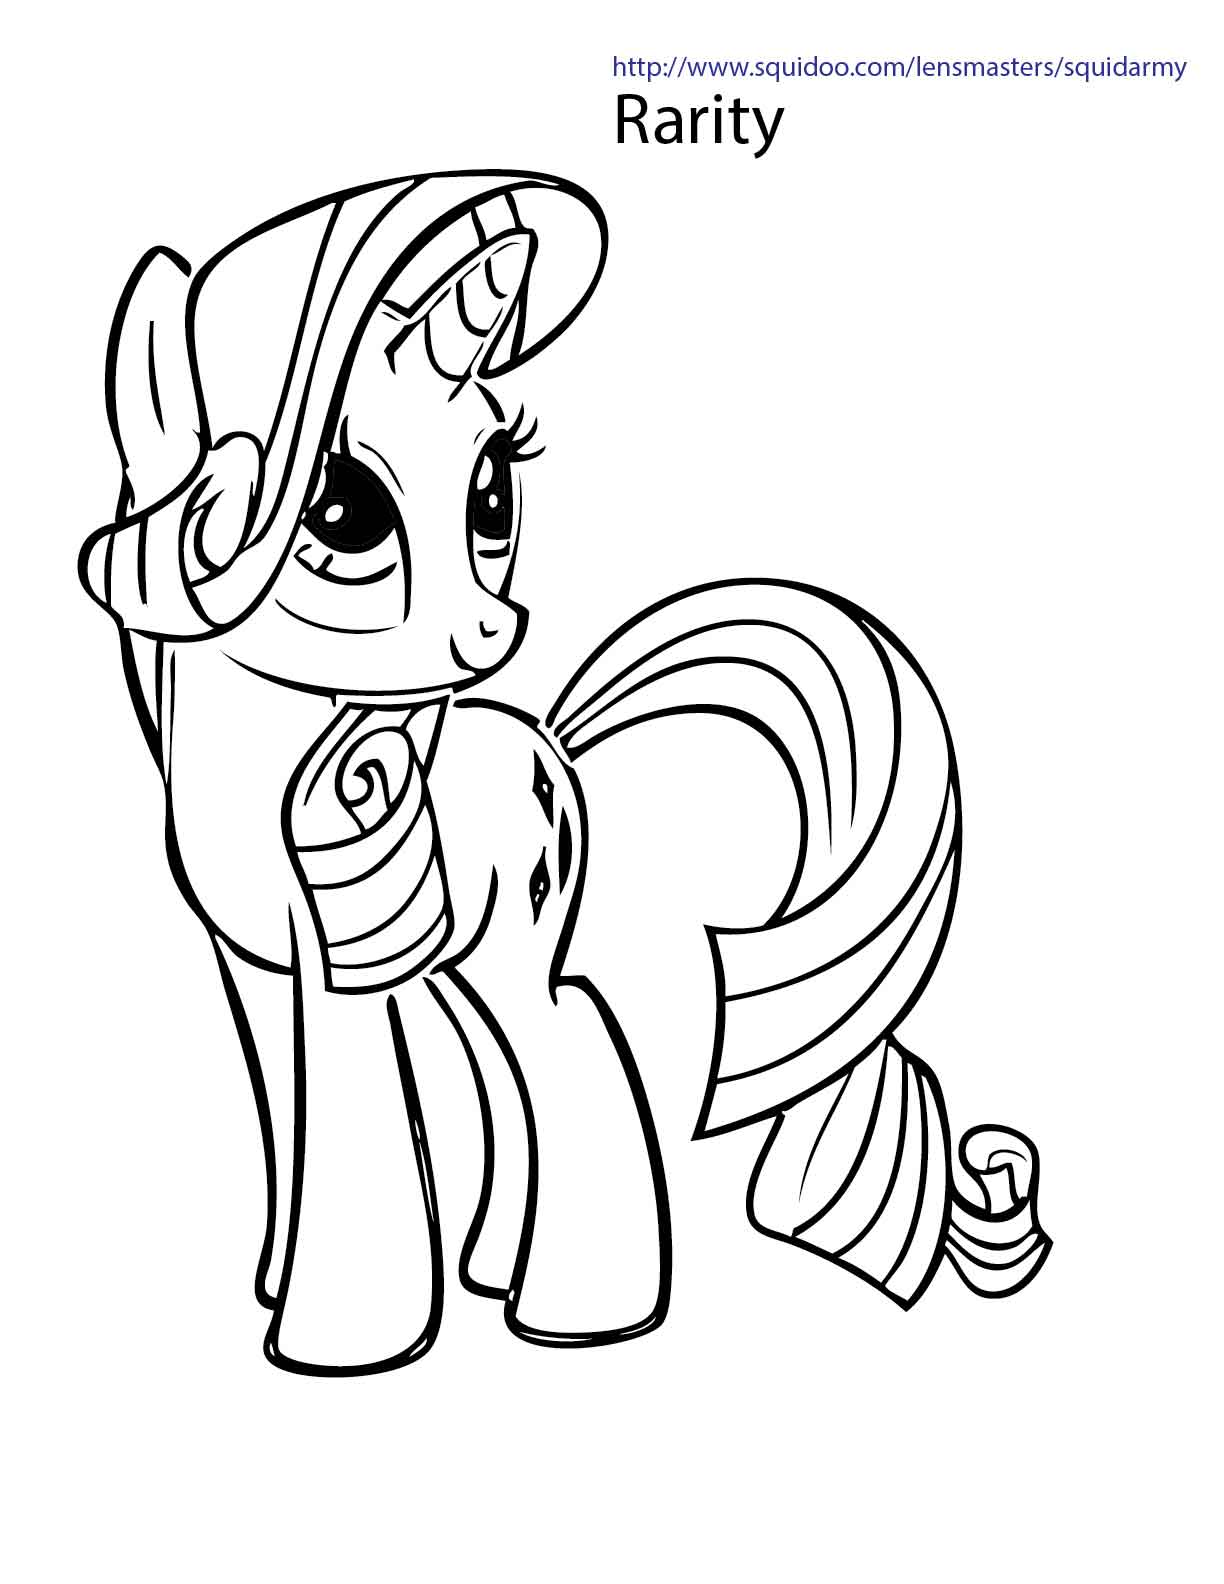 My little pony рисунки. My little Pony раскраска Рарити. Раскраска пони Рарити. Раскраски мой маленький пони Рарити. Раскраска пони Рарити принцесса.